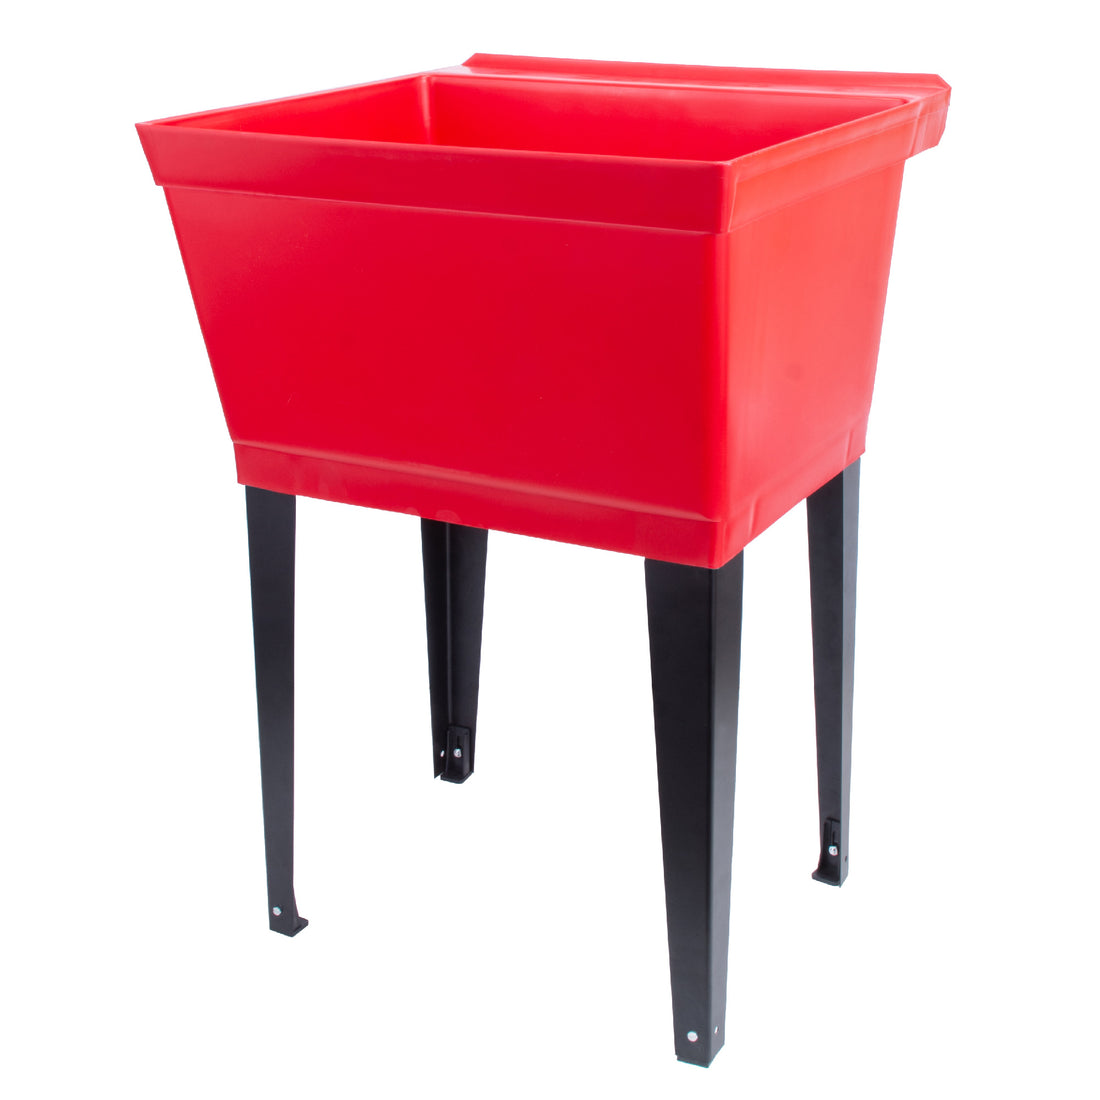 Tehila Standard Freestanding Red Utility Sink with Black Legs, Water Supply Lines Included - Utility sinks vanites Tehila